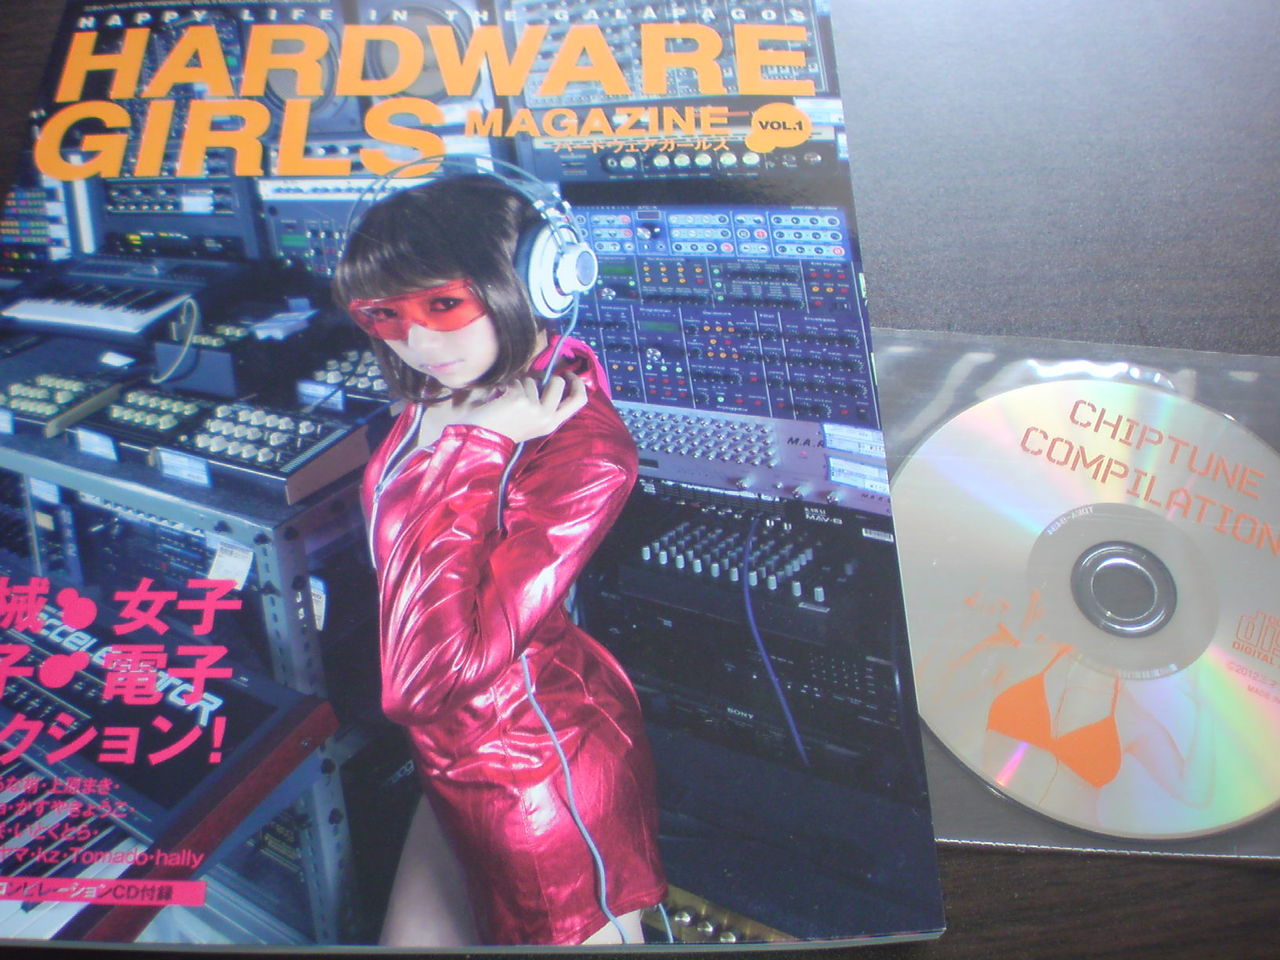 Hardware Girls Magazine 三才ブックス Julie Watai 天野あい コレクターマーボー流